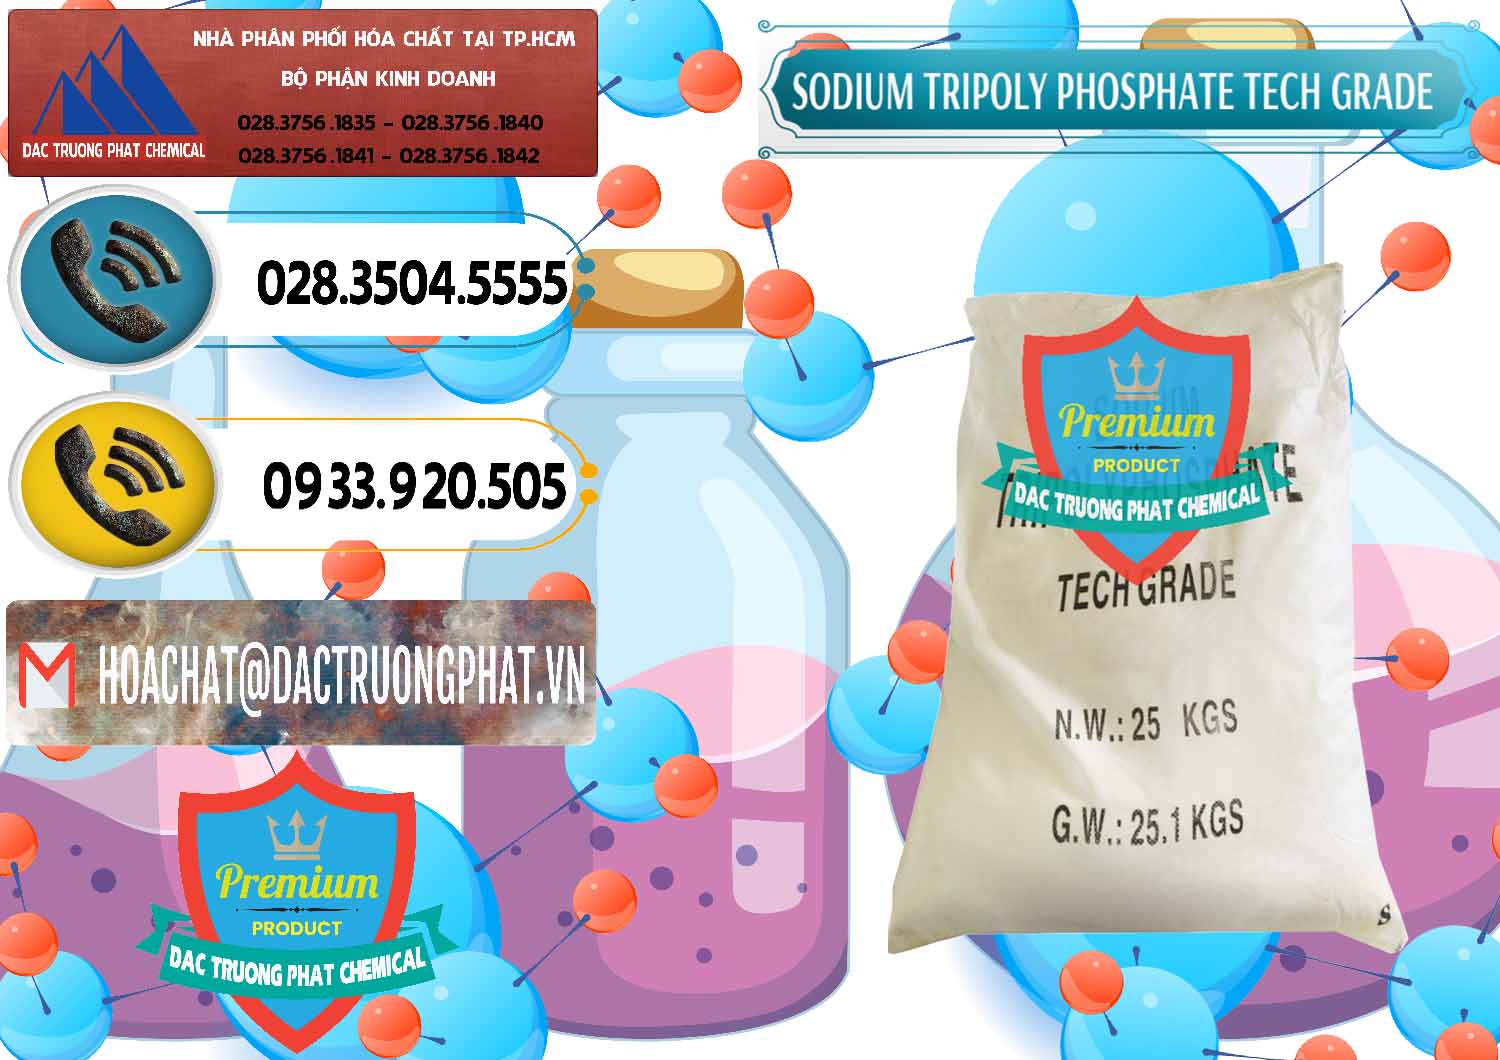 Đơn vị chuyên cung cấp _ bán Sodium Tripoly Phosphate - STPP Tech Grade Trung Quốc China - 0453 - Kinh doanh _ cung cấp hóa chất tại TP.HCM - hoachatdetnhuom.vn